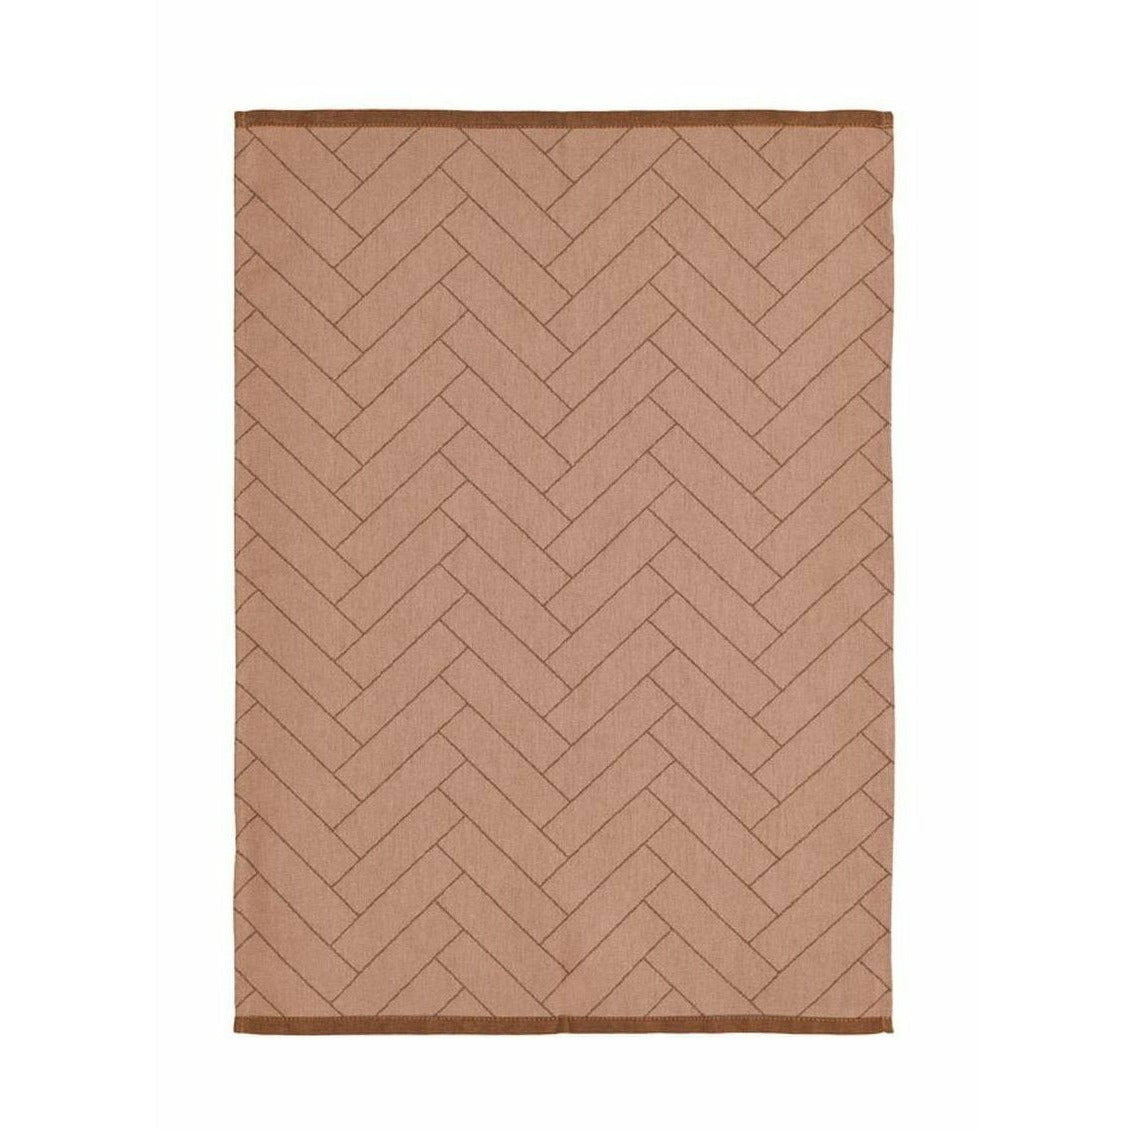 södahl毛巾50x70瓷砖浅棕色